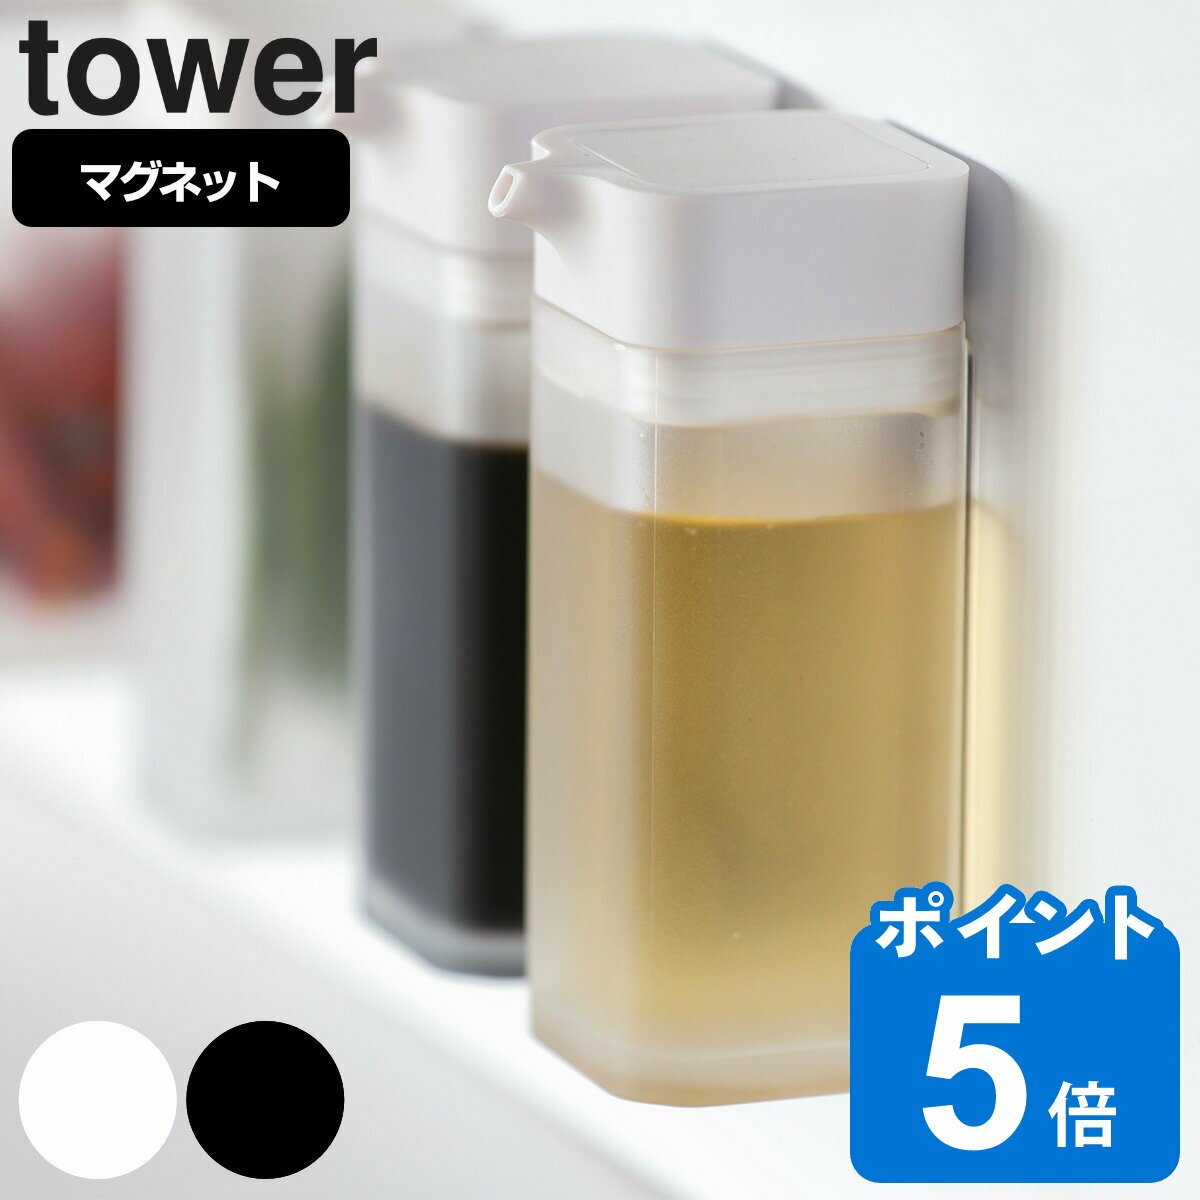 山崎実業 tower マグネットプッシュ式醤油差し タワー （ タワーシリーズ しょうゆ差し 調味料入れ オイルボトル 調…